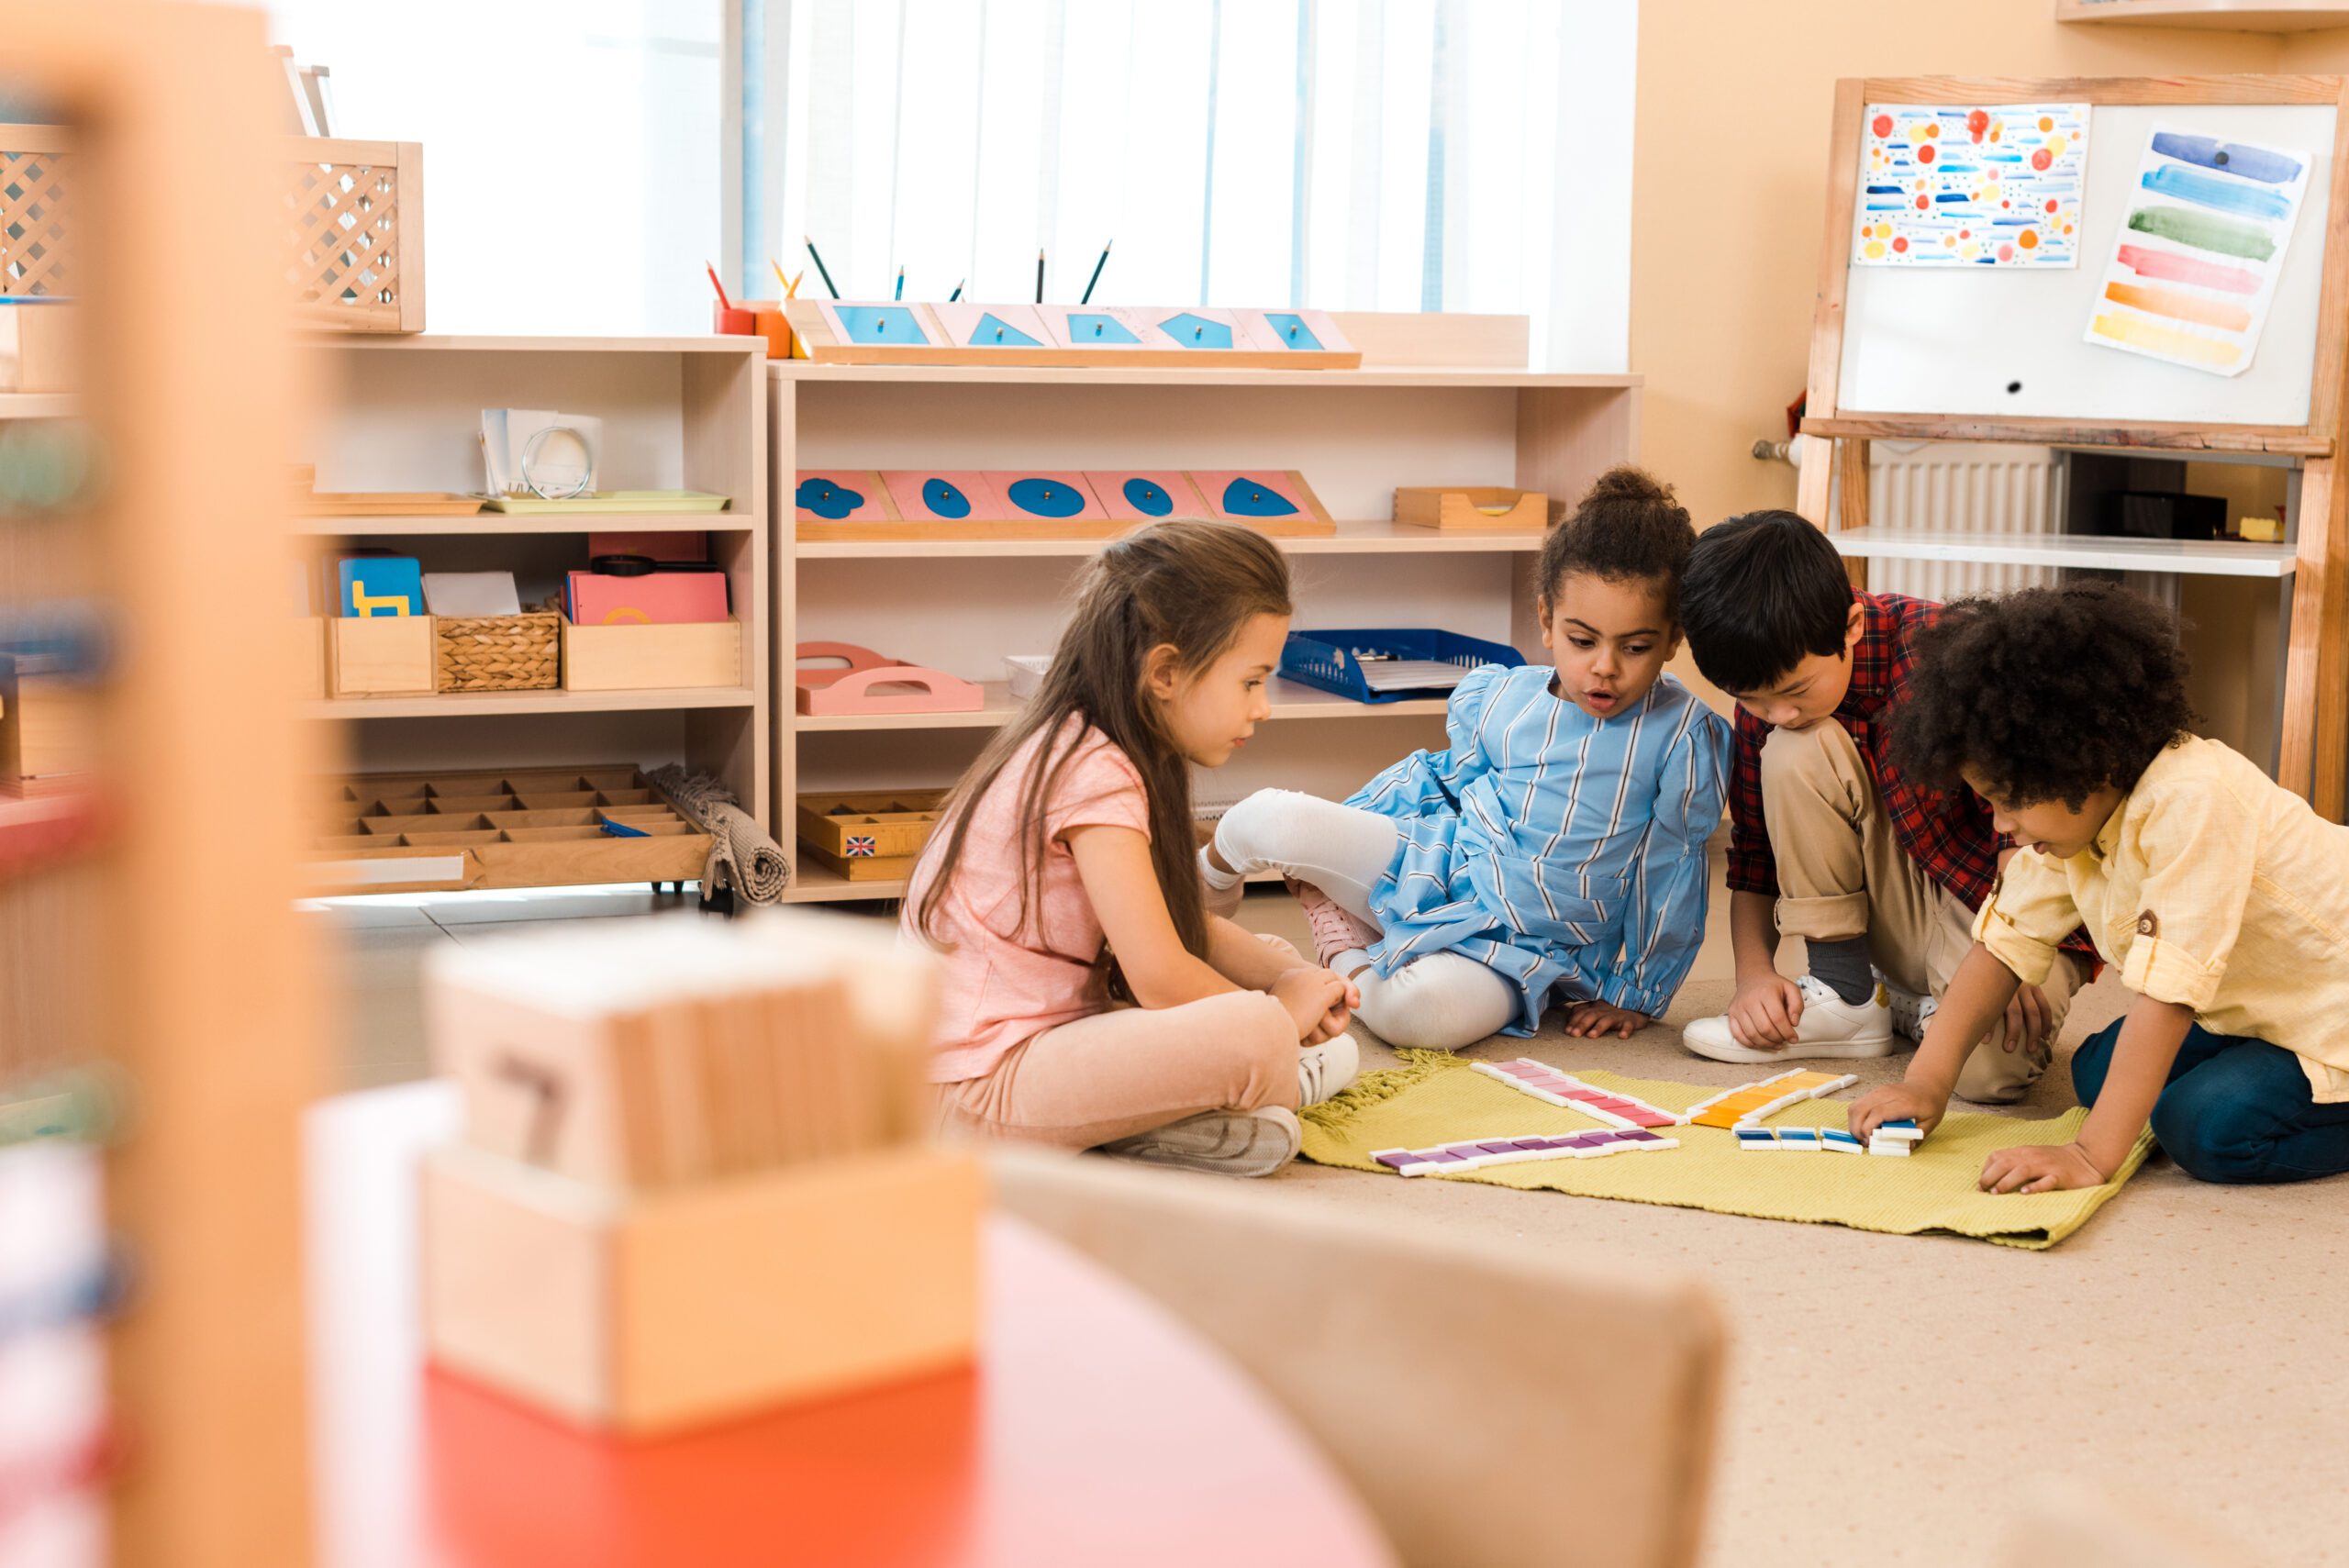 Kids in a montessori-style classroom